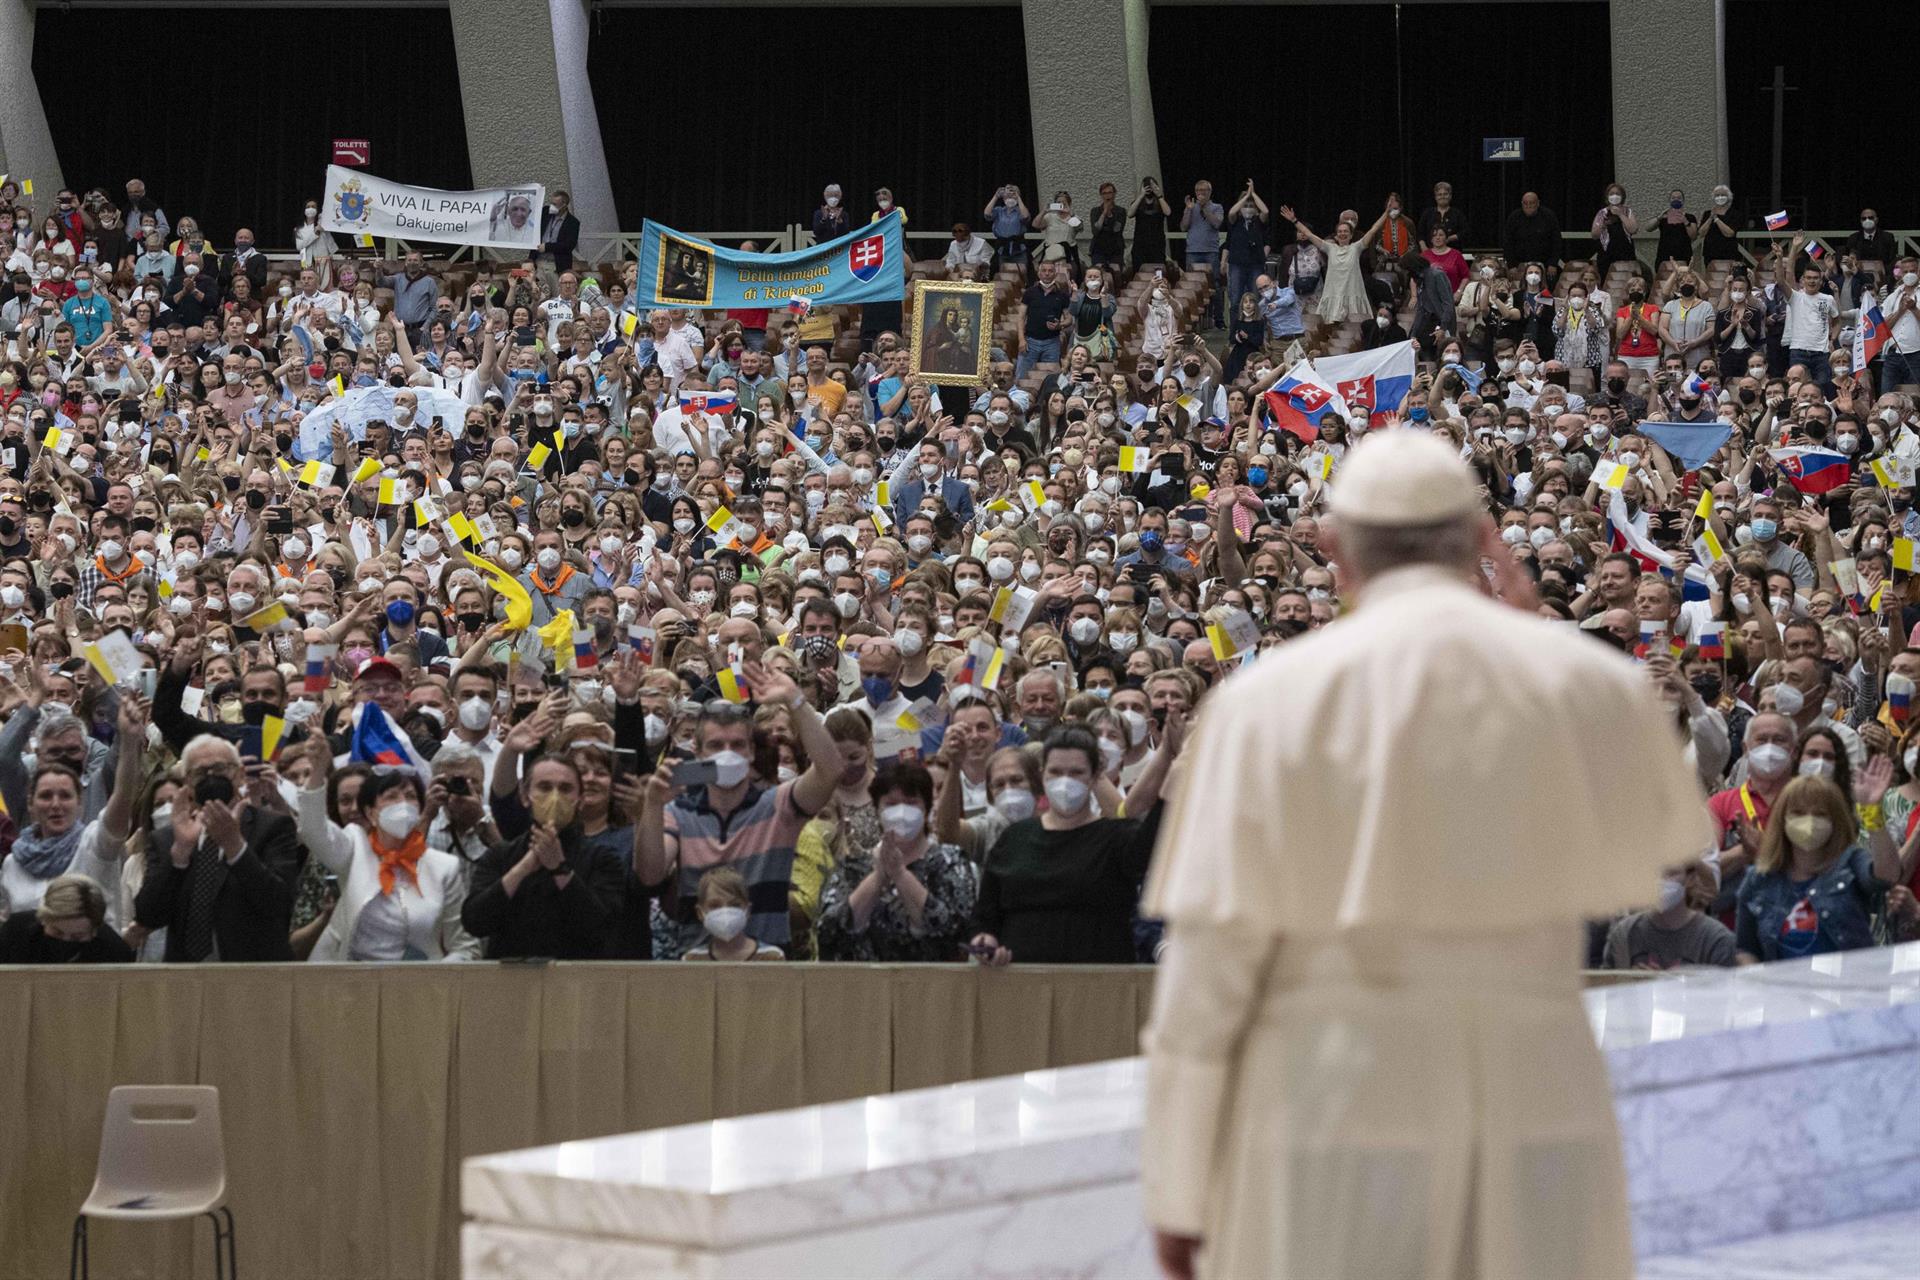 El papa Francisco ha pedido reunirse con Putin en Moscú, pero no ha recibido respuesta